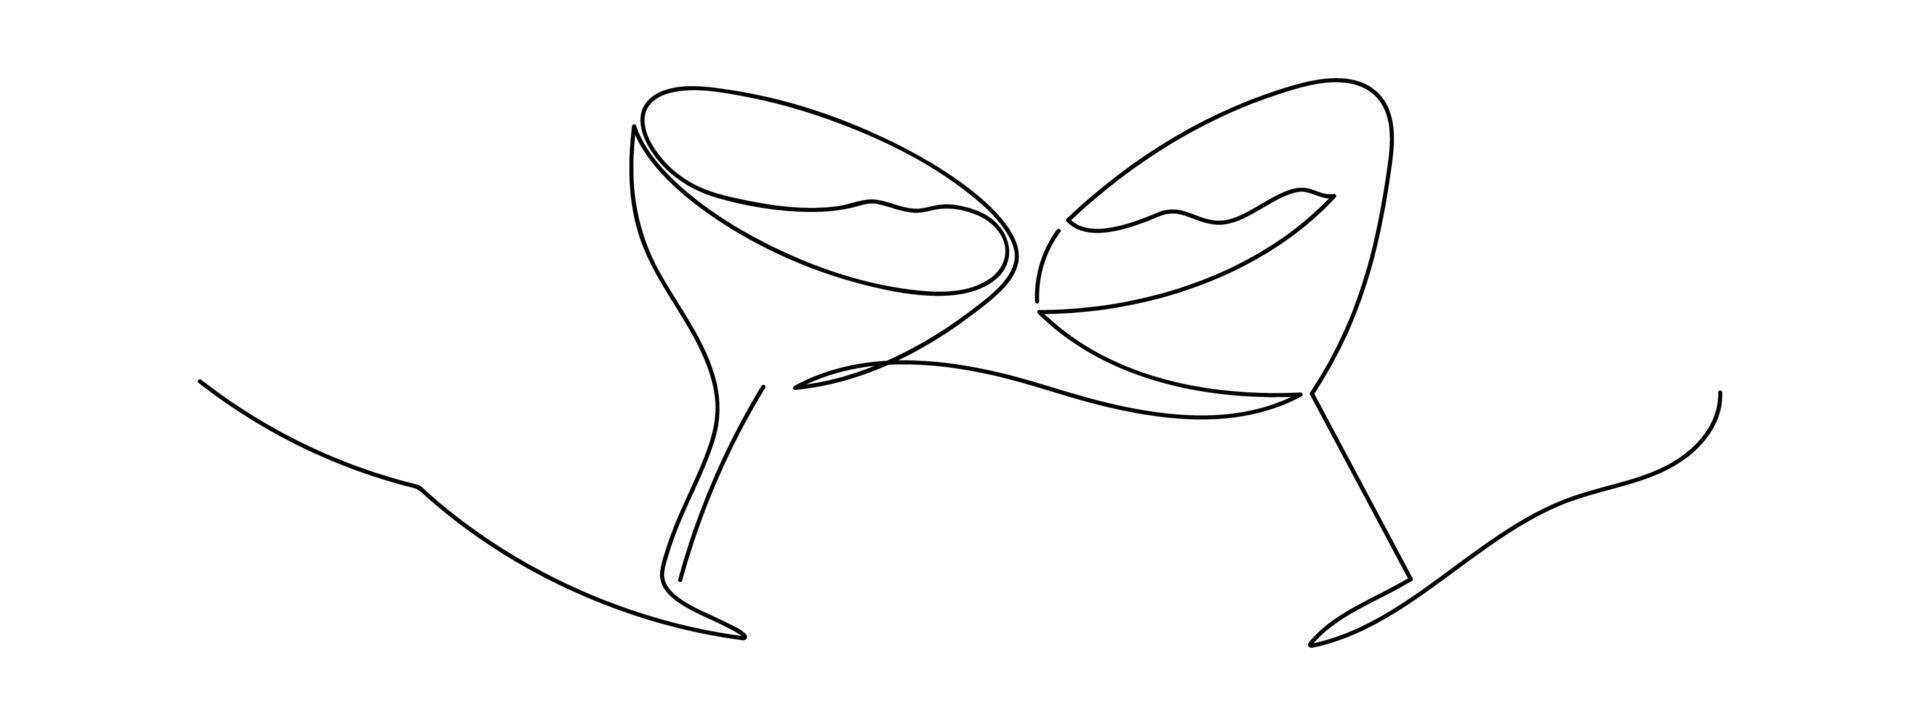 två Martini glasögon linje konst. ritad för hand vektor design element.